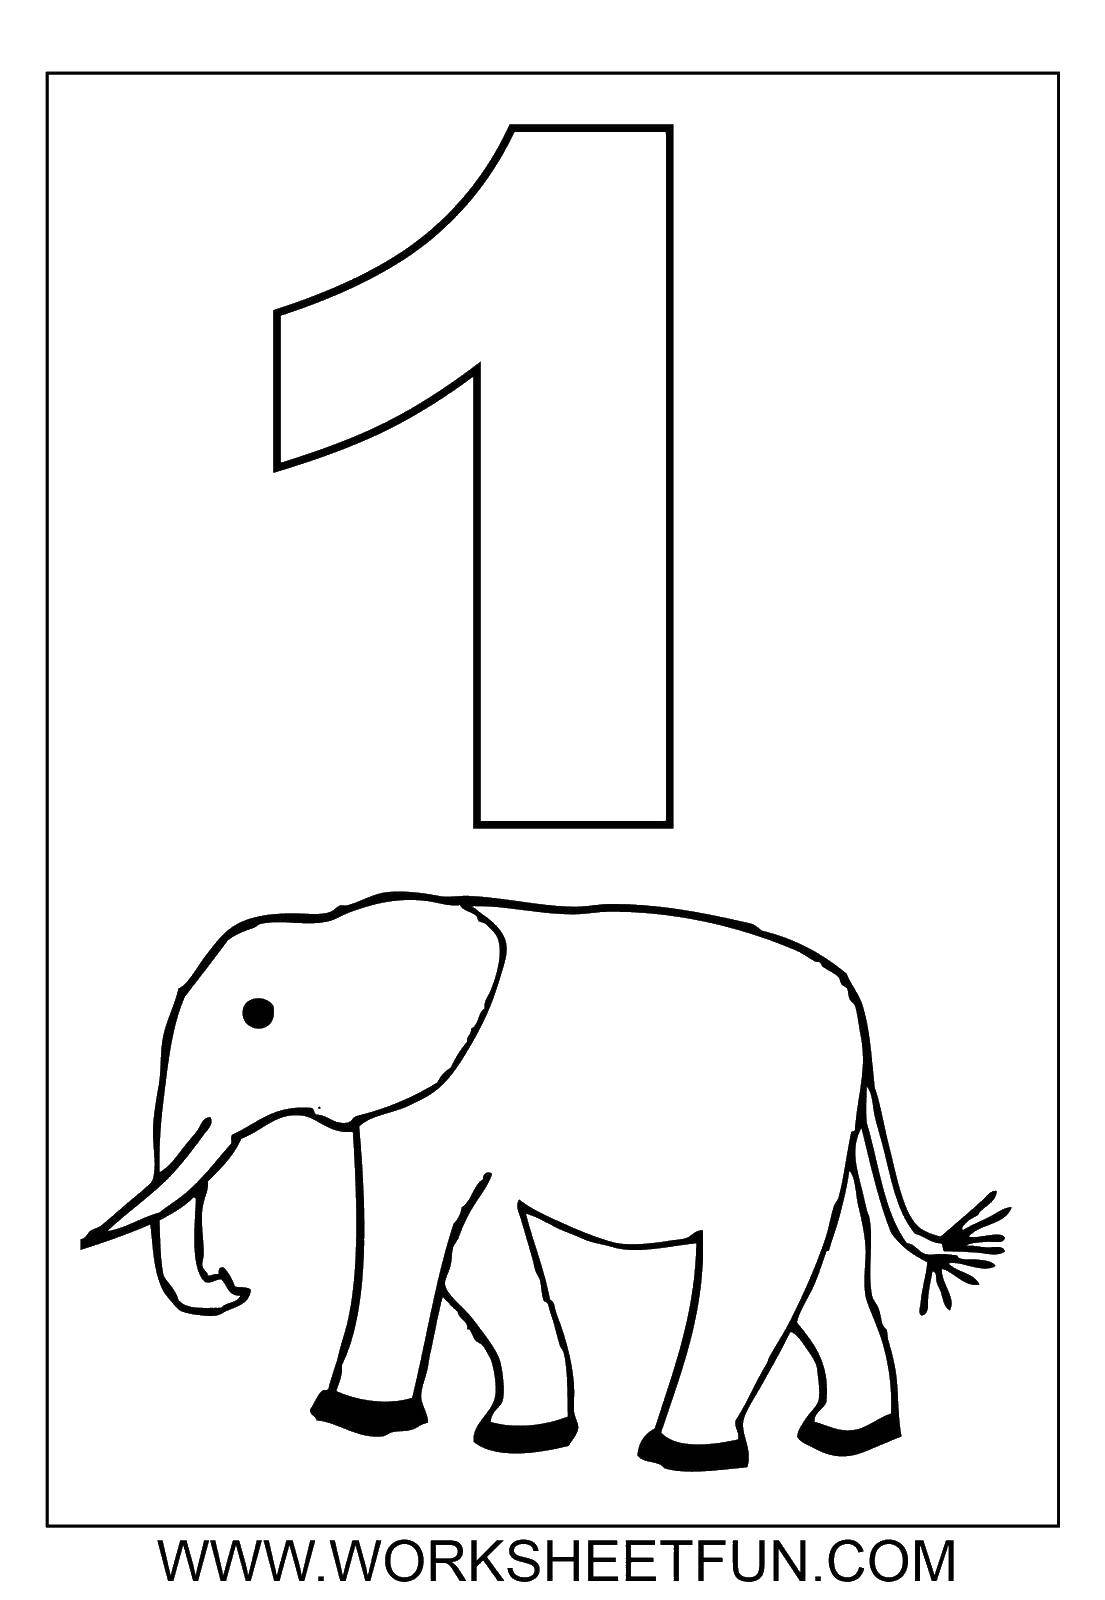 Название: Раскраска Один слоник. Категория: Цифры. Теги: Цифры, счёт, числа.